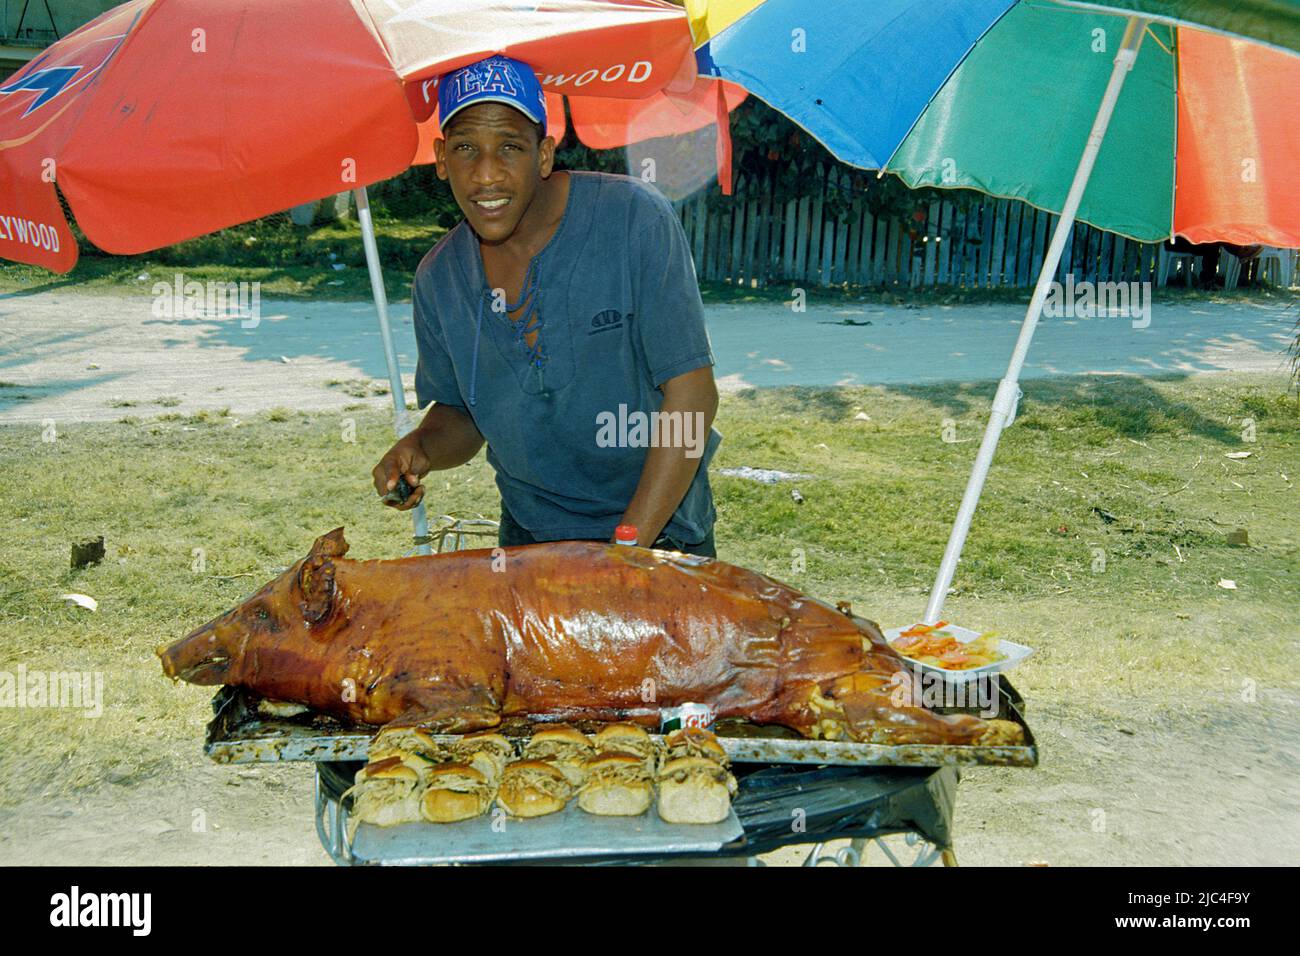 Cuban man with pig roast at a festival, St. Lucia, Cuba, Caribbean Stock Photo